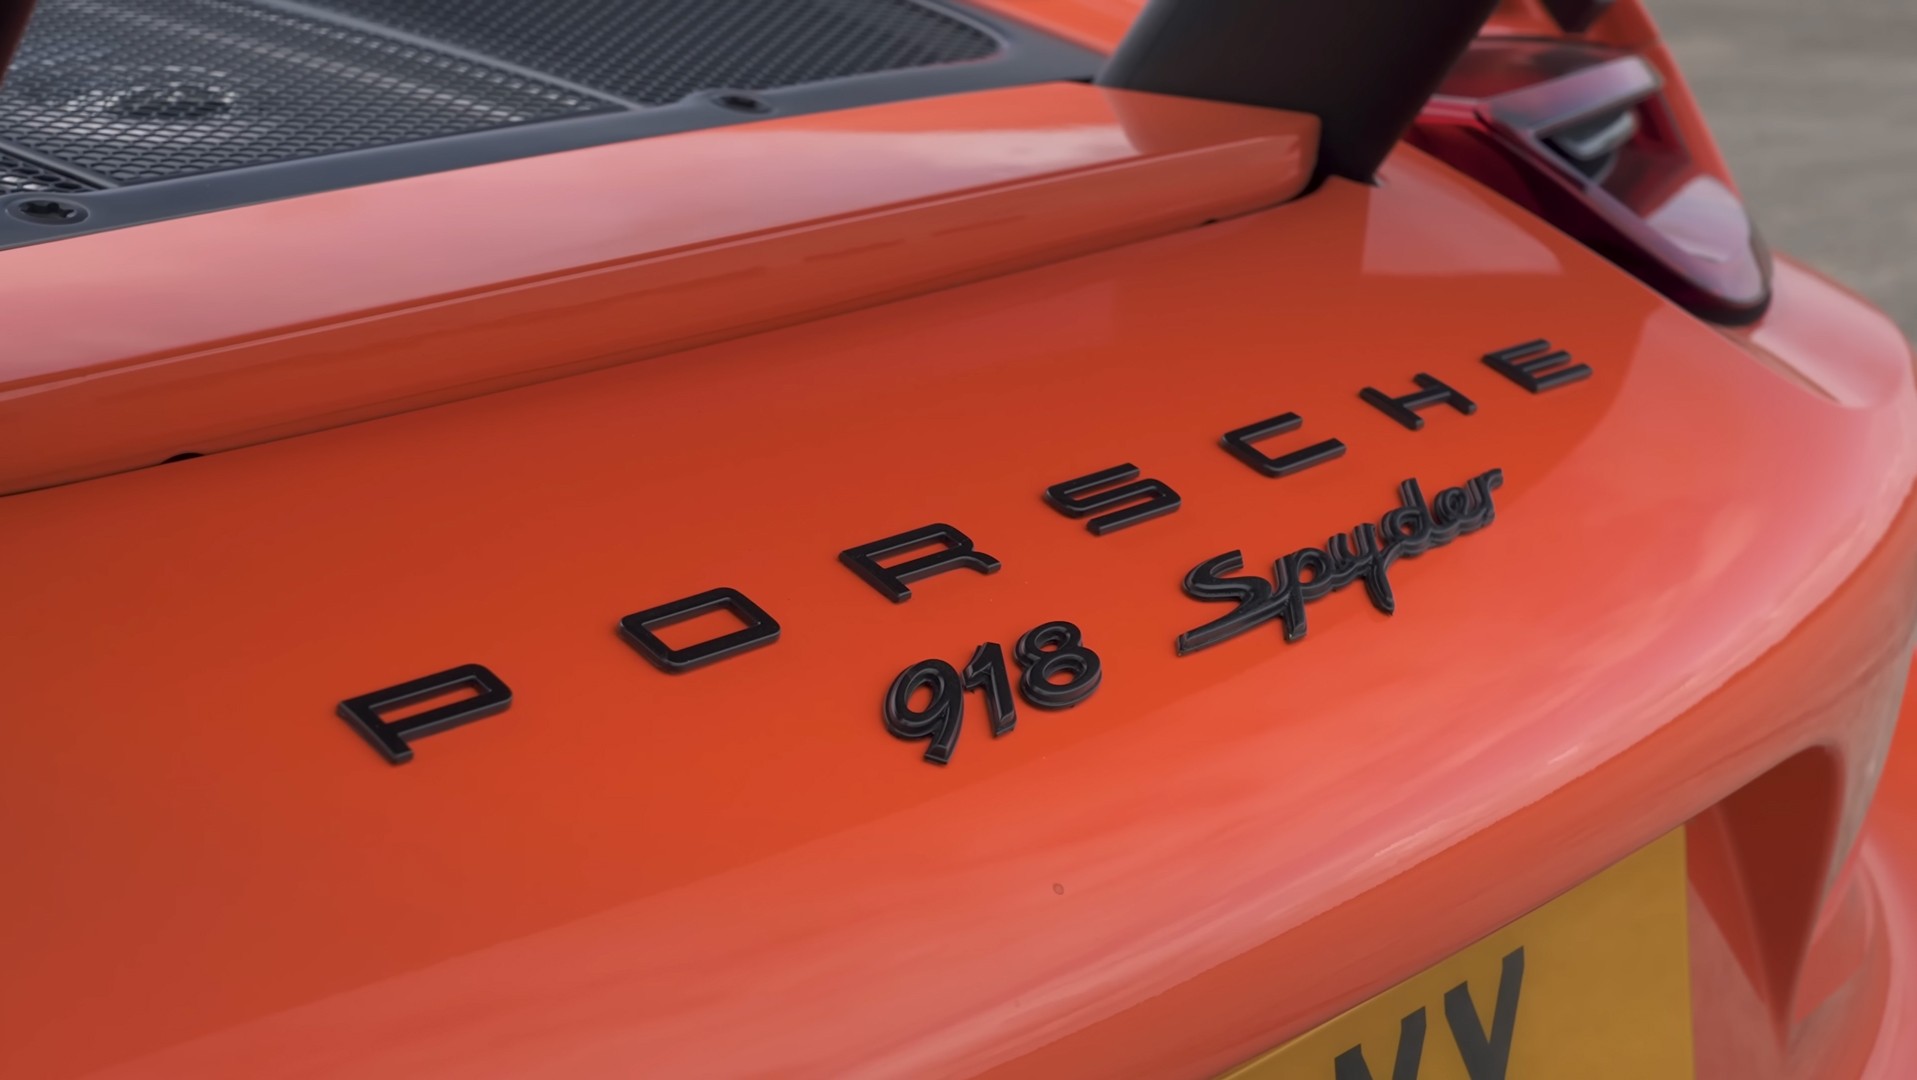 Гонка Porsche 918 Spyder против 911 Turbo S на 1/4 мили — потрясающее противостояние